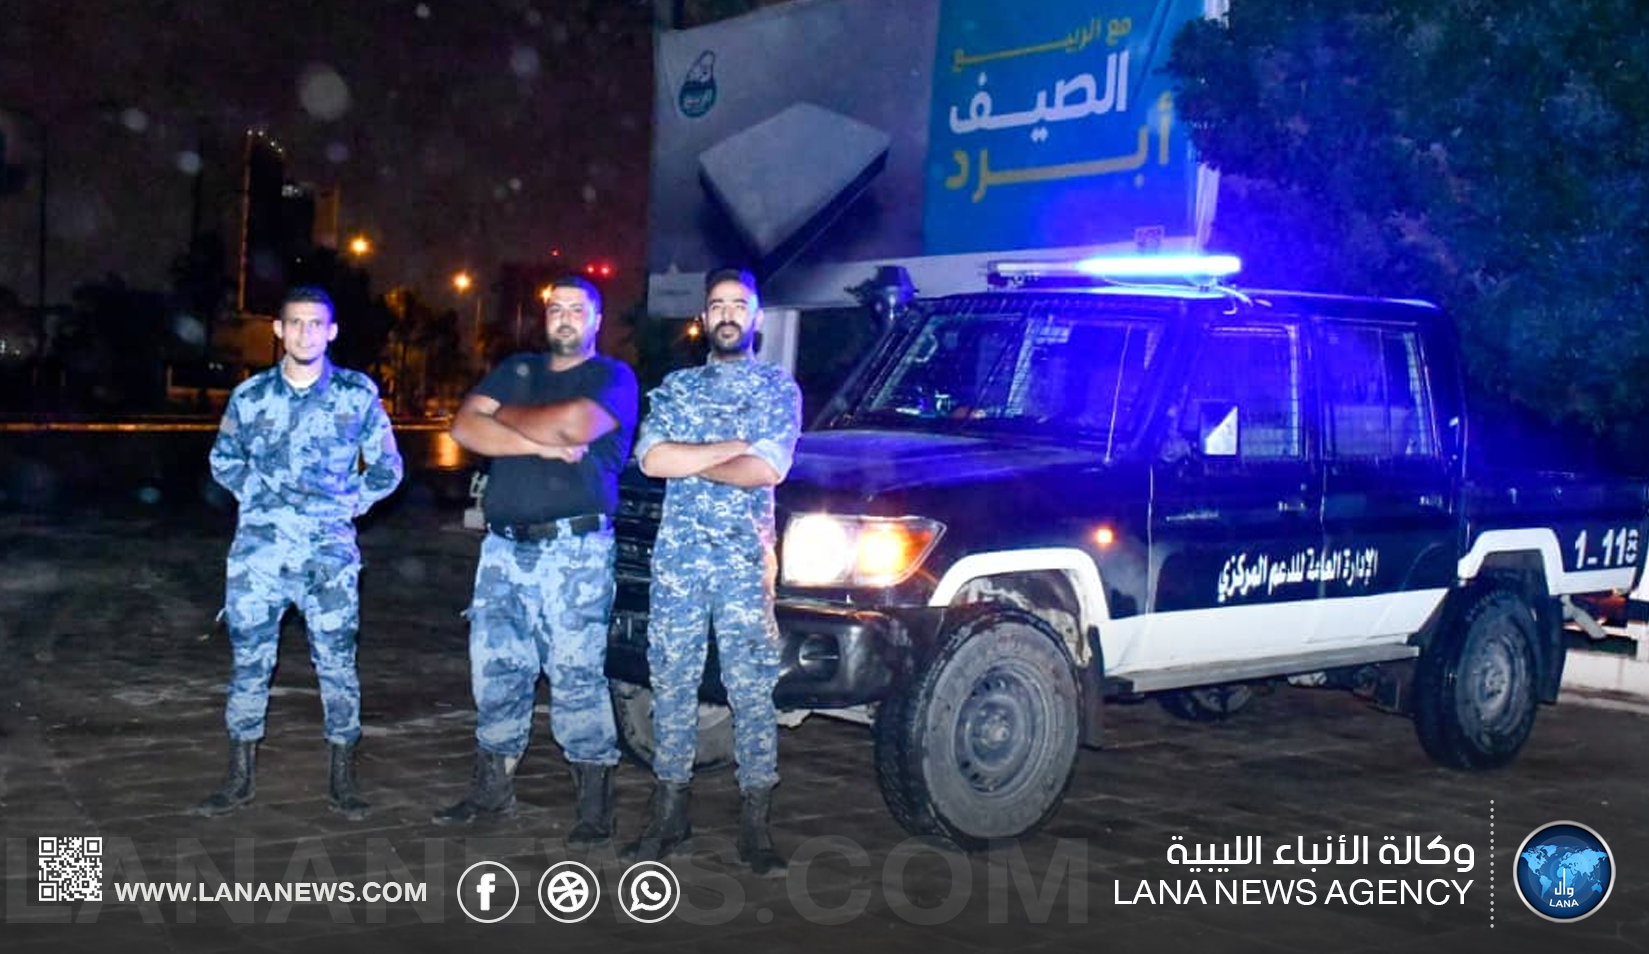 وكالة الأنباء الليبية ترصد انتشار الدوريات الأمنية والعسكرية وفق الخطة الموضوعة من قبل رئيس اللجنة العليا للطوارئ لتداعيات الأوضاع الجوية